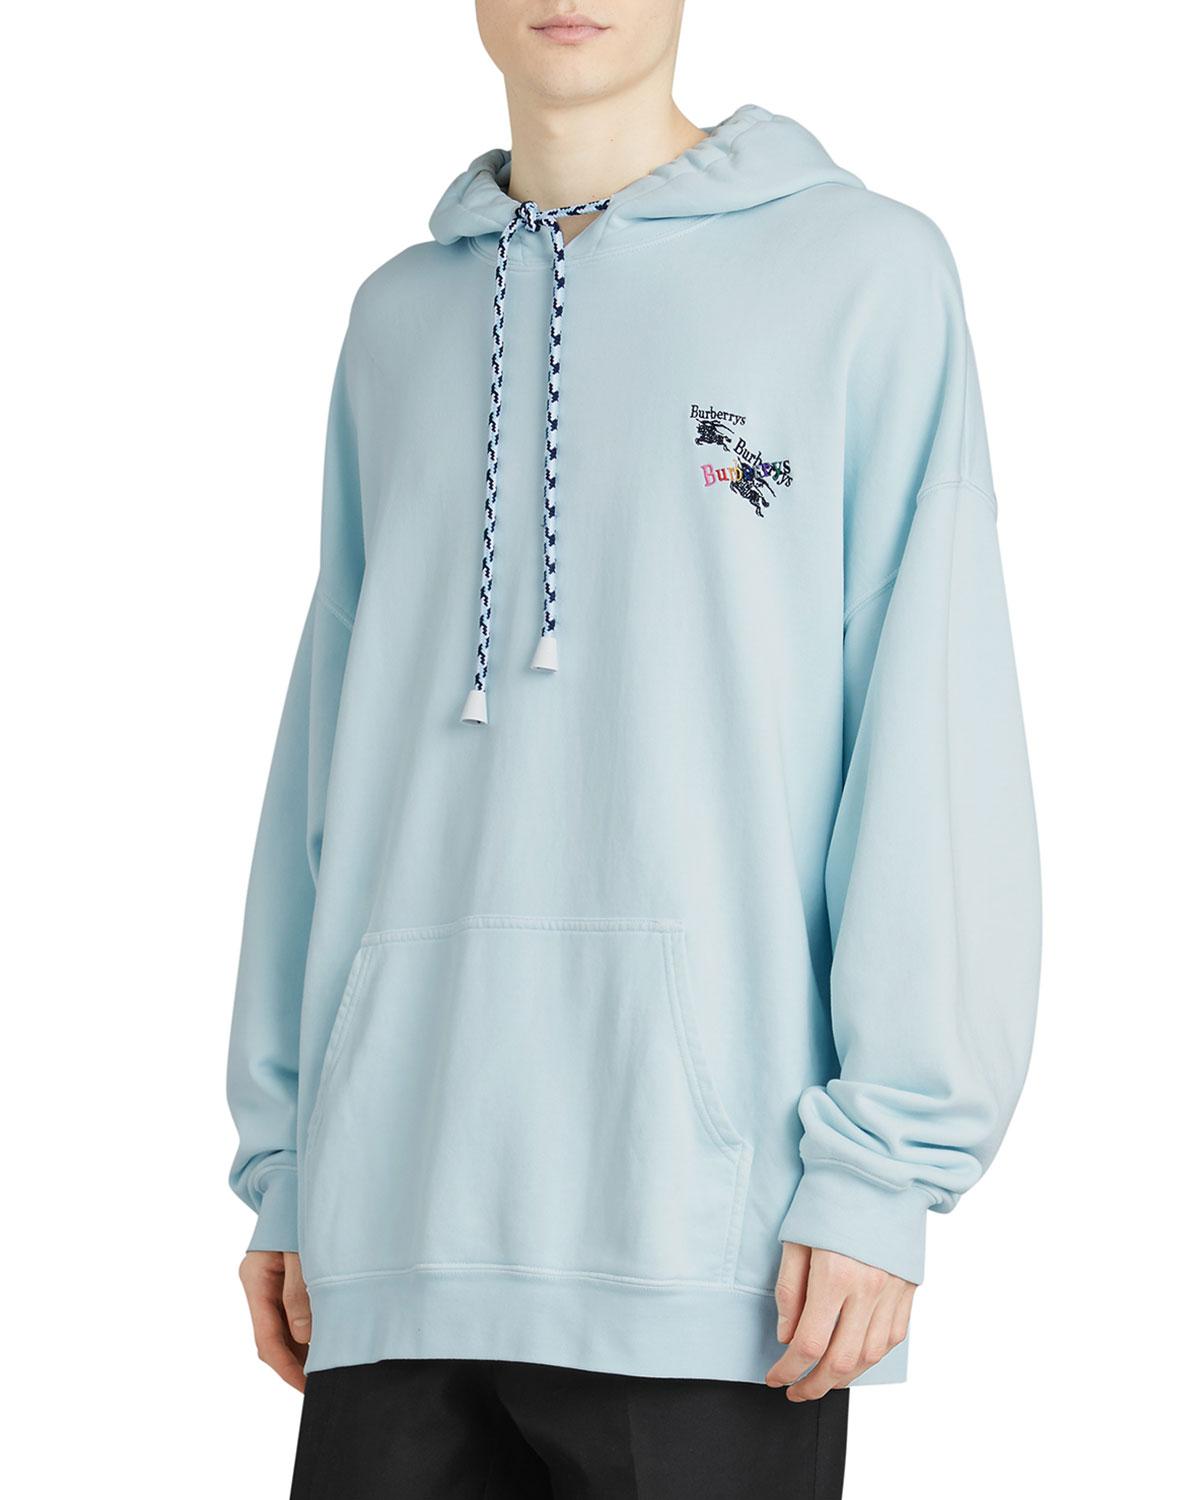 burberry hoodie mens blue